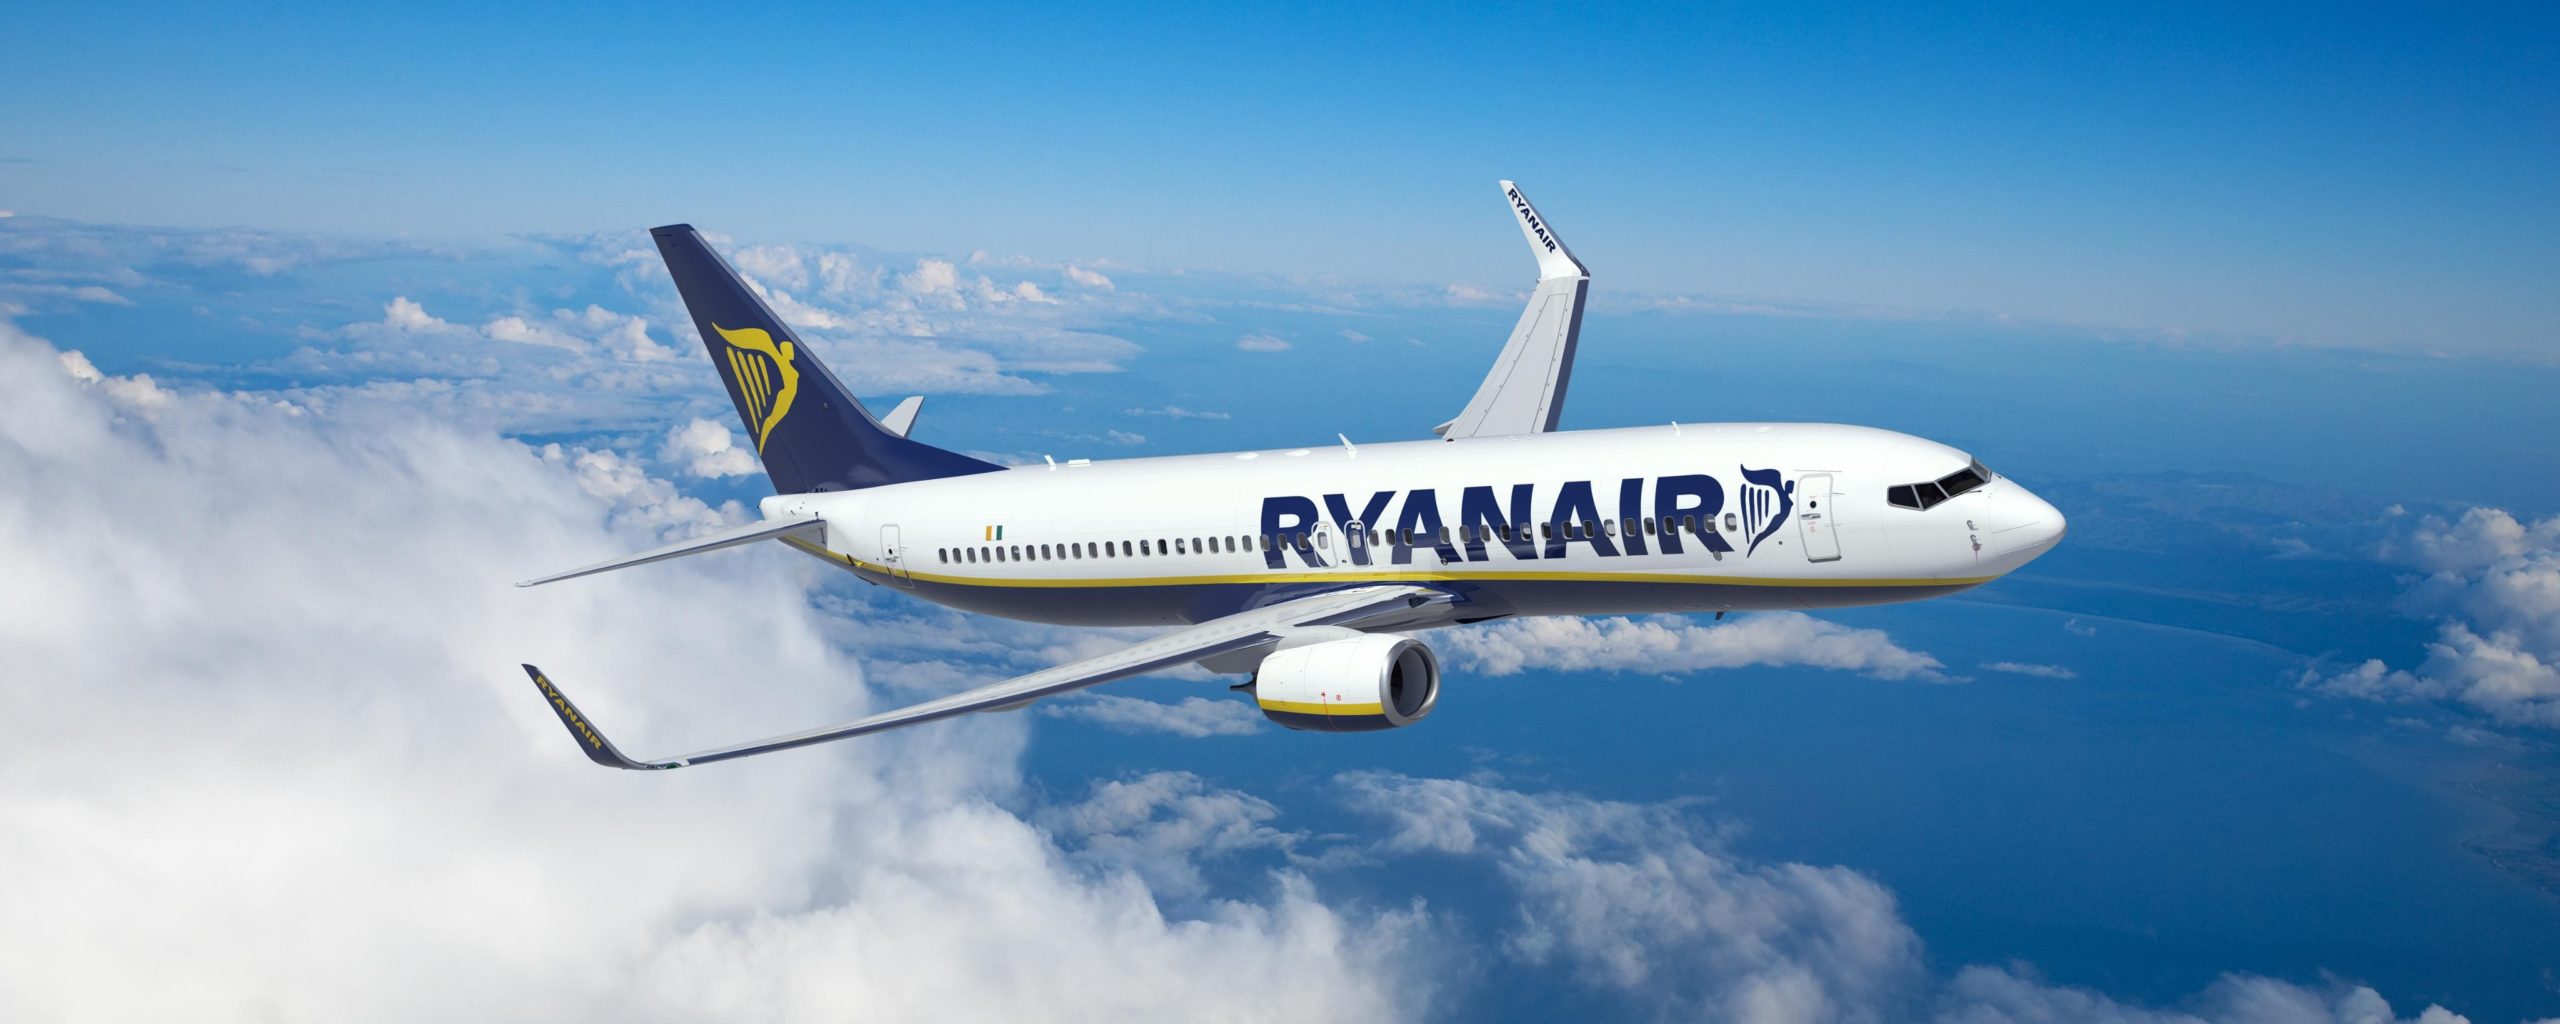 Ryanair îşi propune o creştere a profitului cu 10% în acest an, după câştiguri aproape record pentru ultimul său exerciţiu financiar